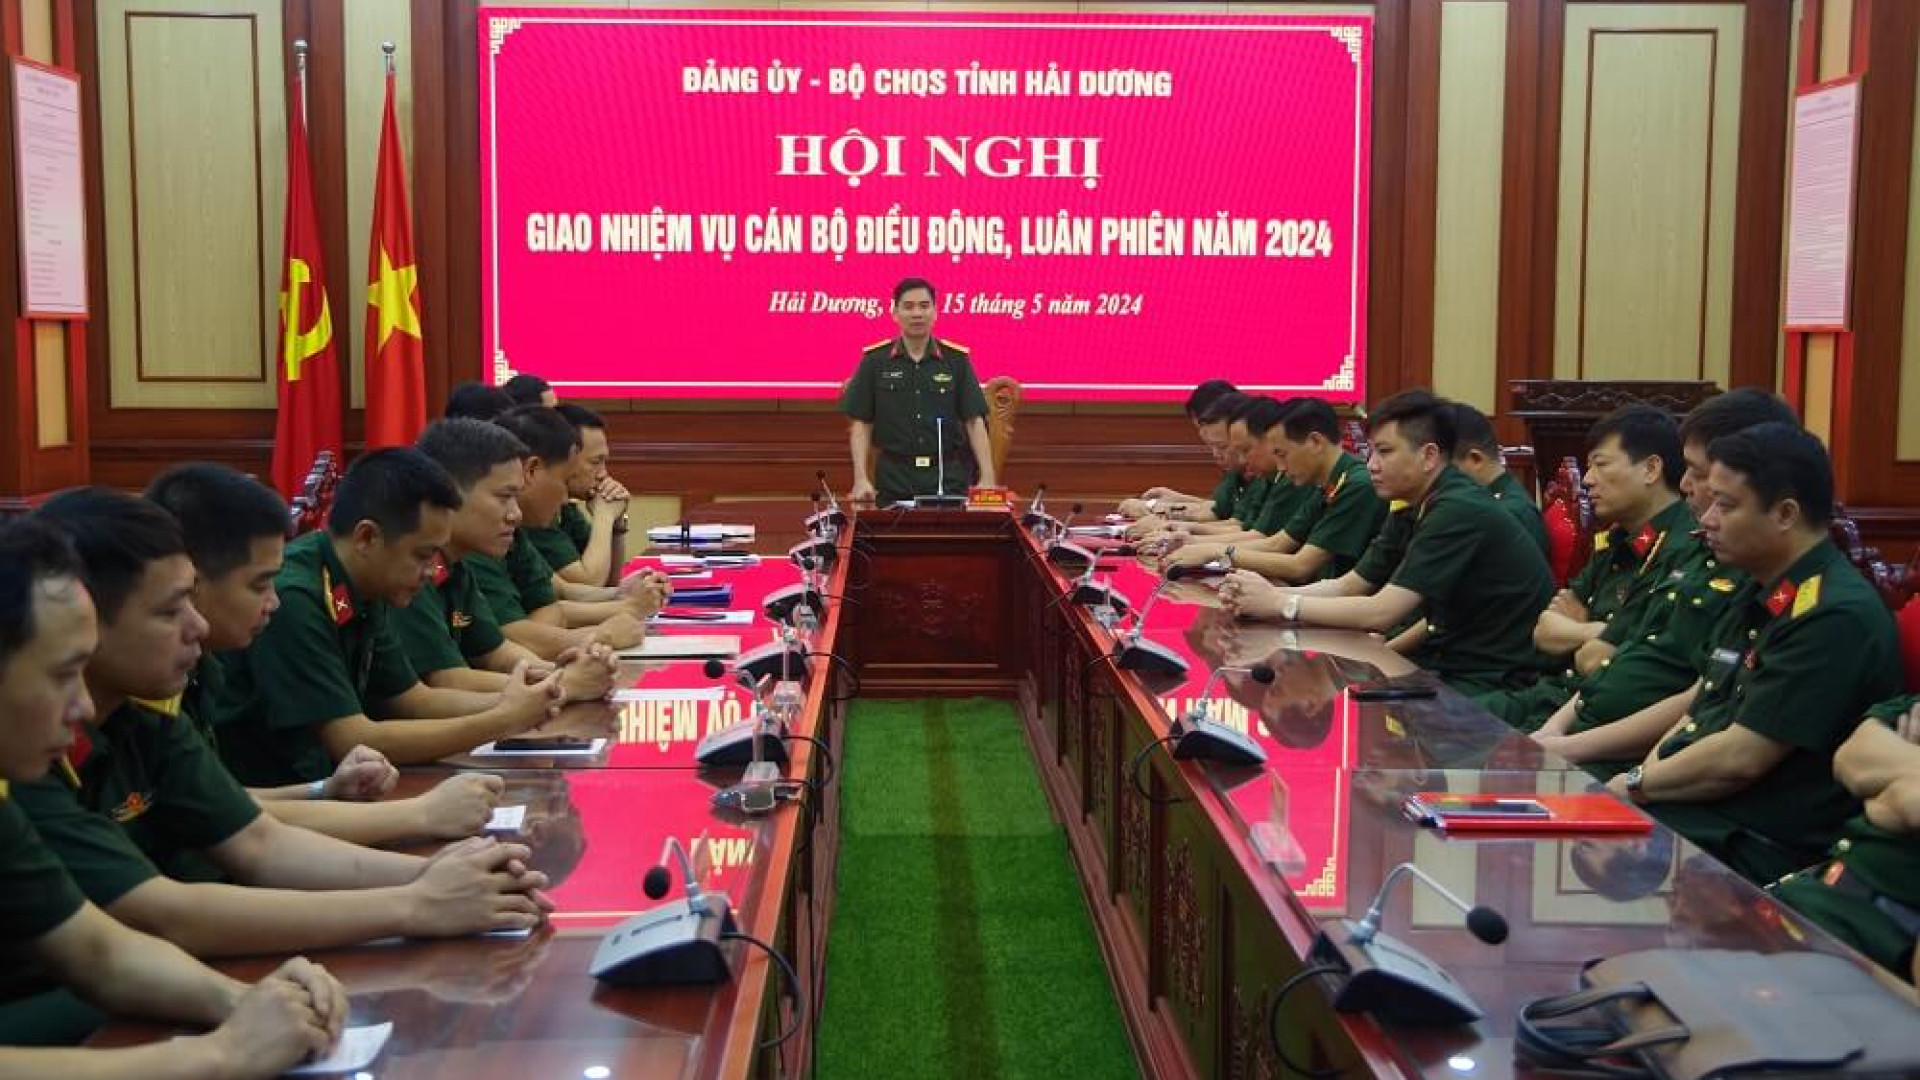 Bộ CHQS tỉnh Hải Dương giao nhiệm cho cán bộ điều động, luân phiên tại các đơn vị thuộc Quân khu năm 2024